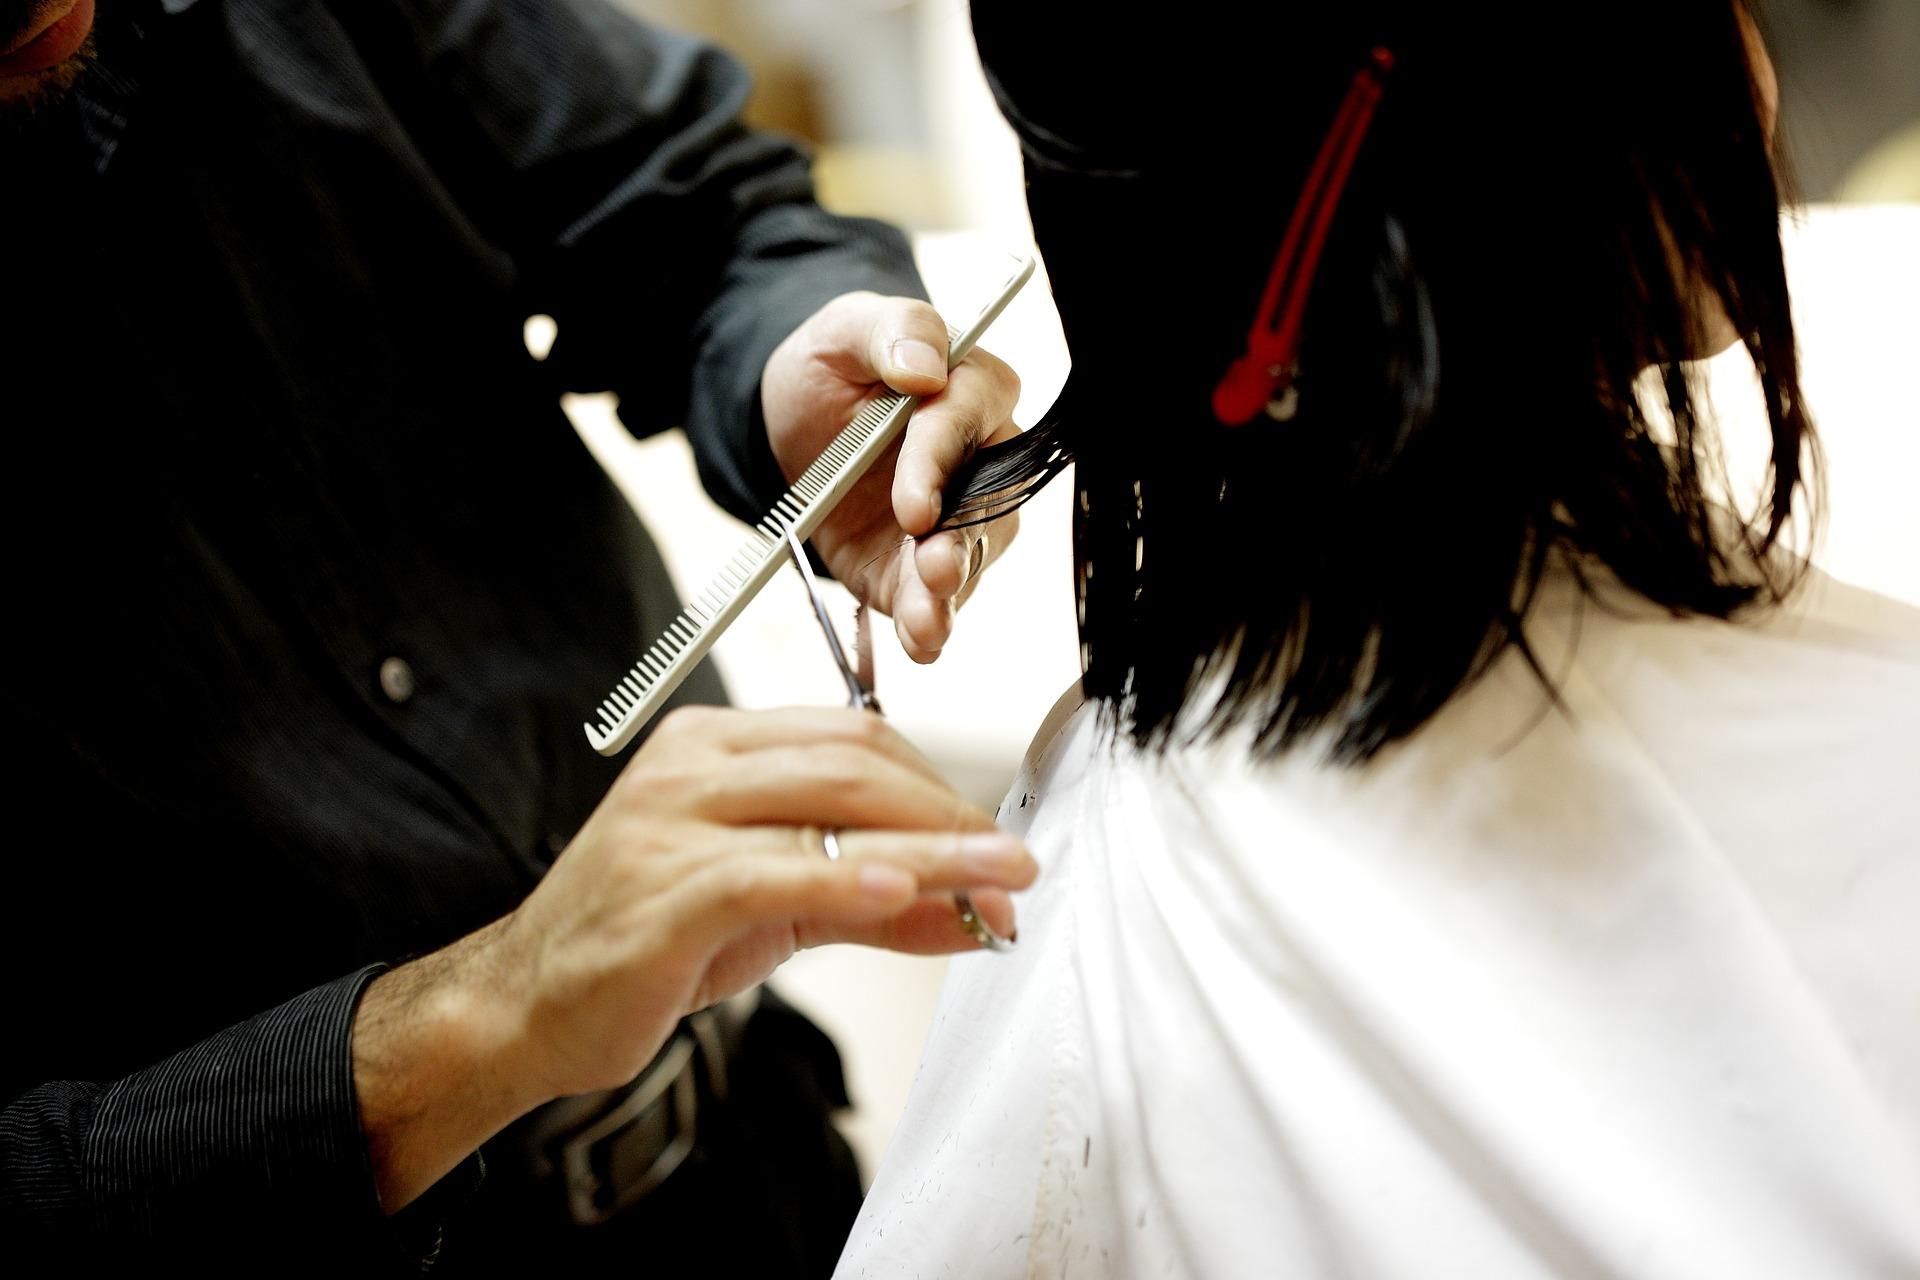 Getting a hair cut in Japanese hair salon?